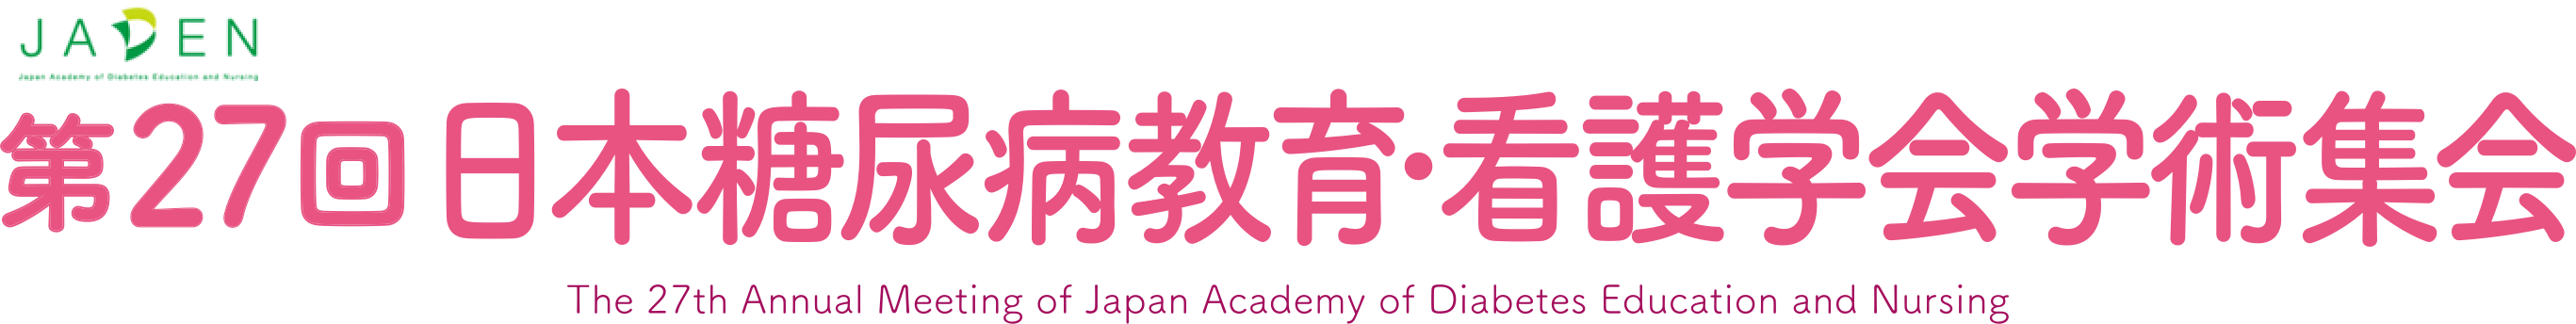 第27回 日本糖尿病教育・看護学会学術集会 